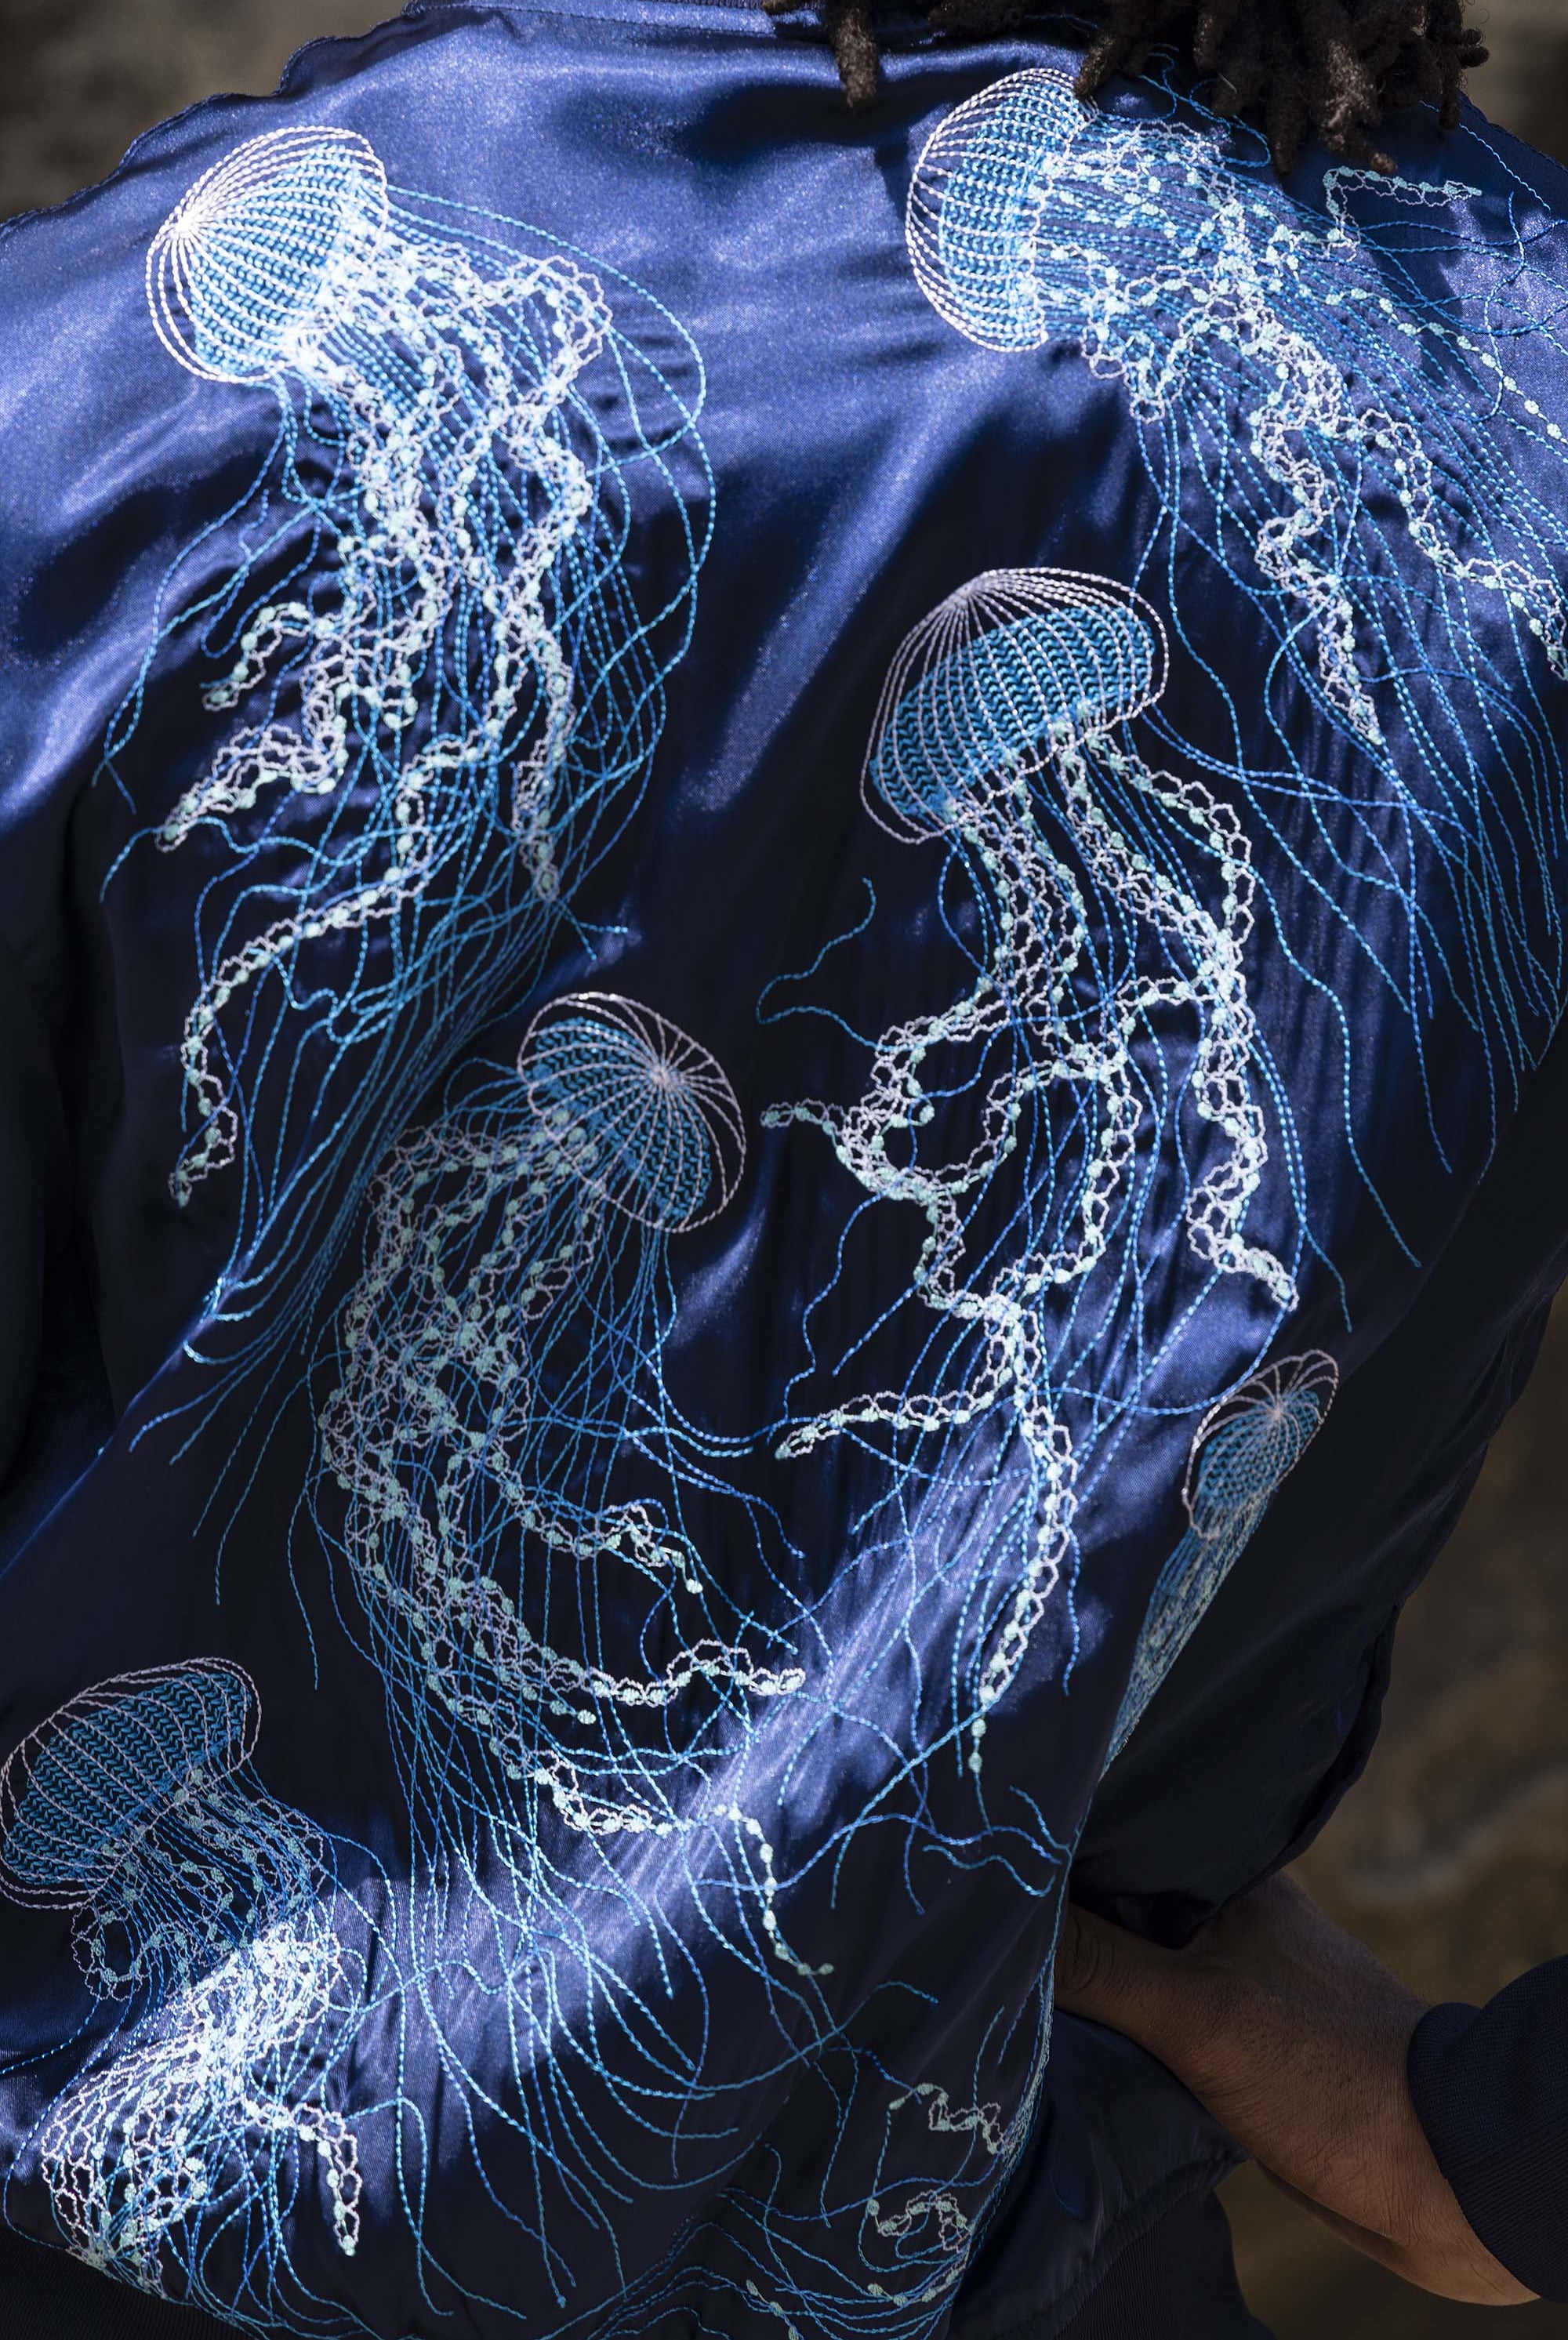 Blouson Paraguas Medusas Bleu Marine veste de sport Misericordia pour apporter autant originalité qu'élégance